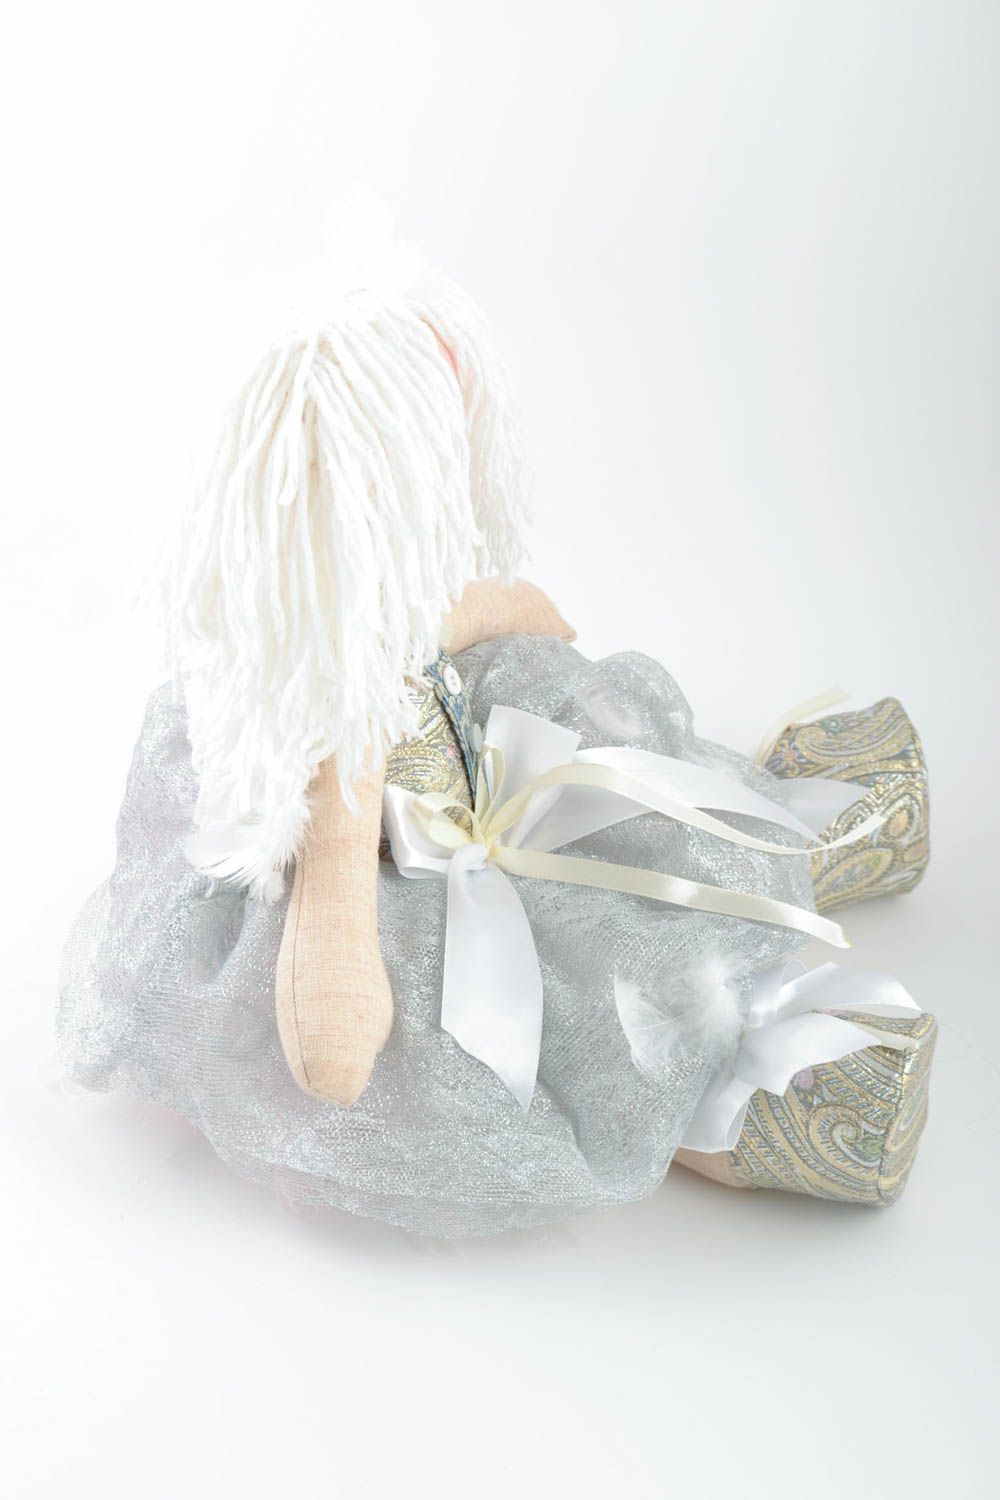 Мягкая кукла ангел с белыми волосами небольшого размера красивая ручной работы фото 2